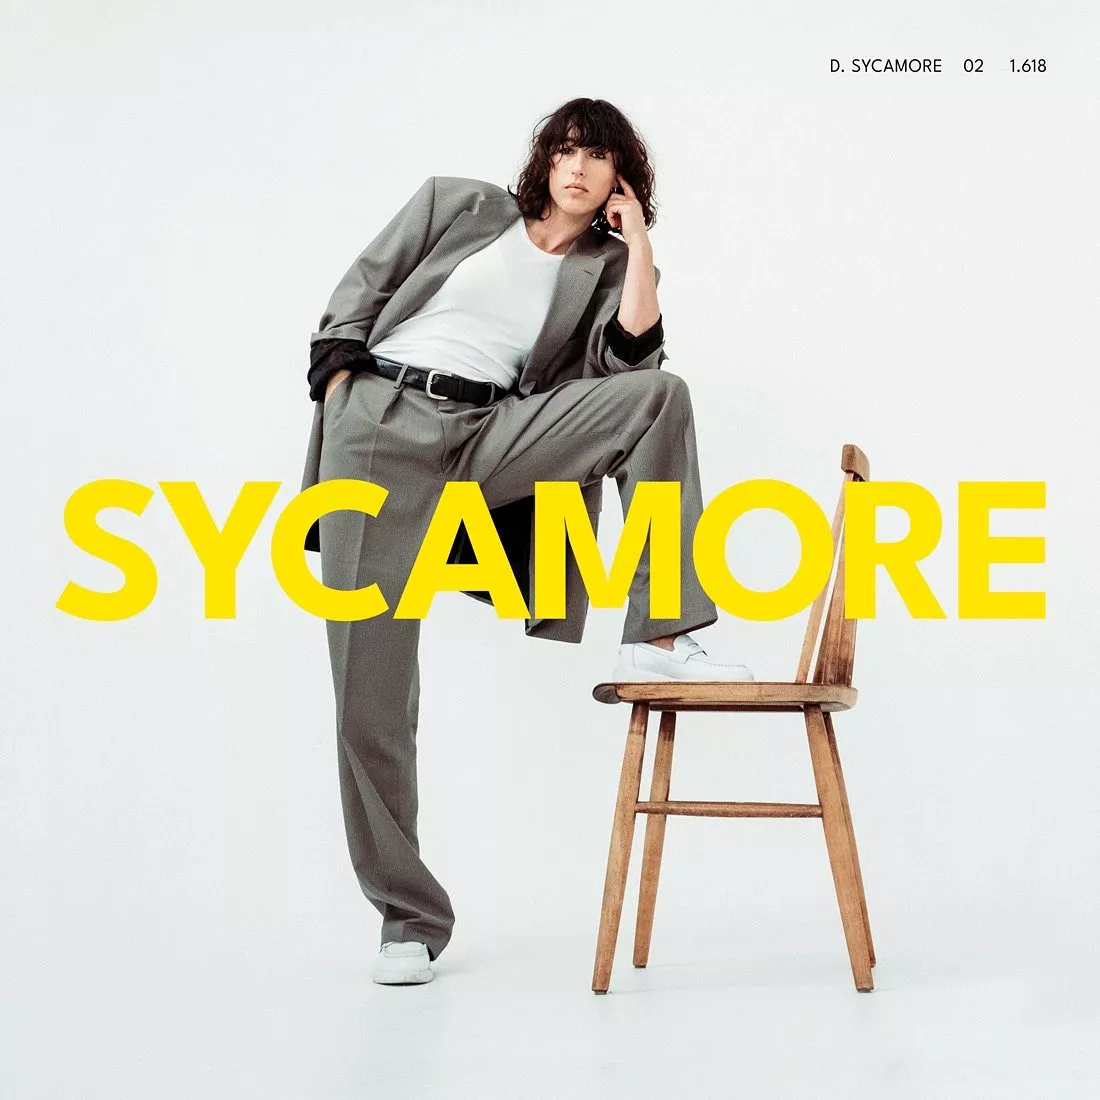 Sycamore - Drew Sycamore